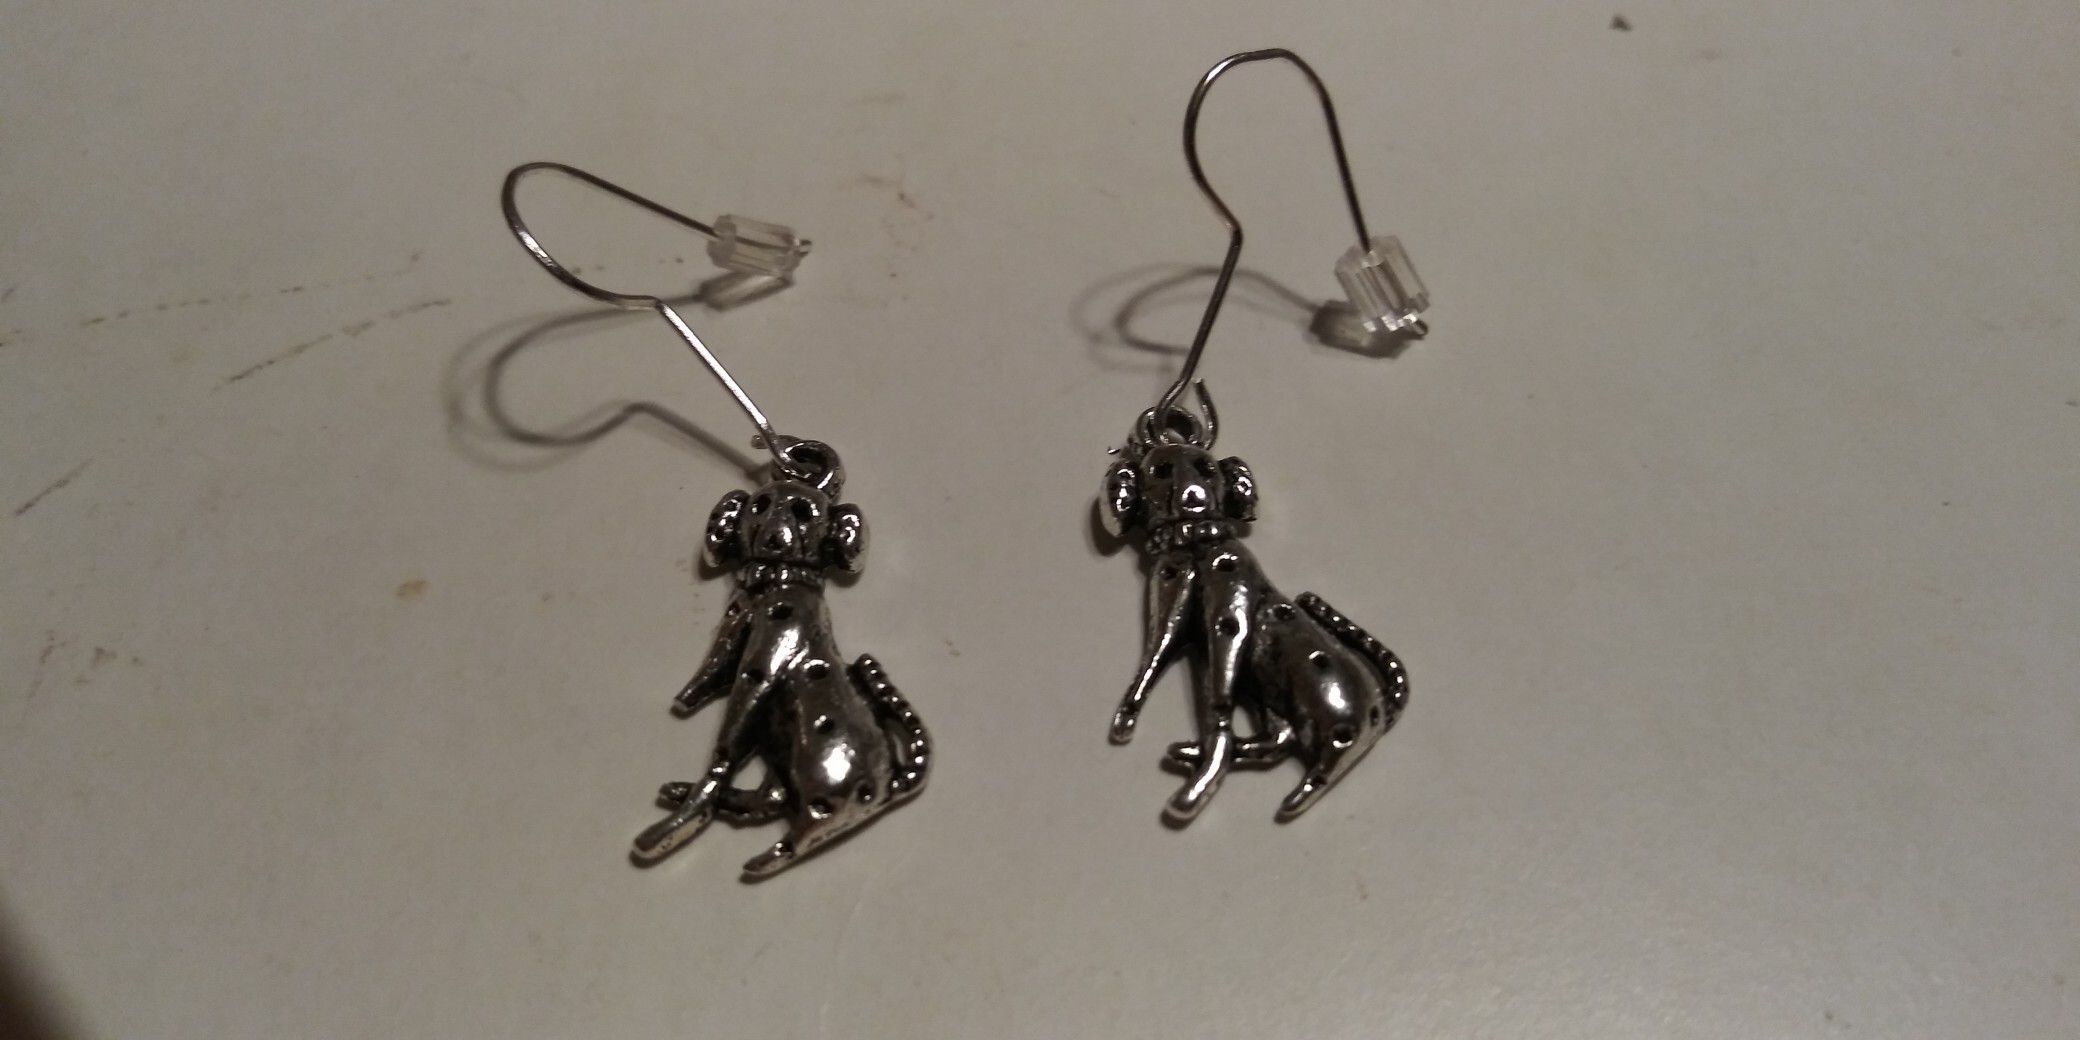 New! Dalmatian dog earrings